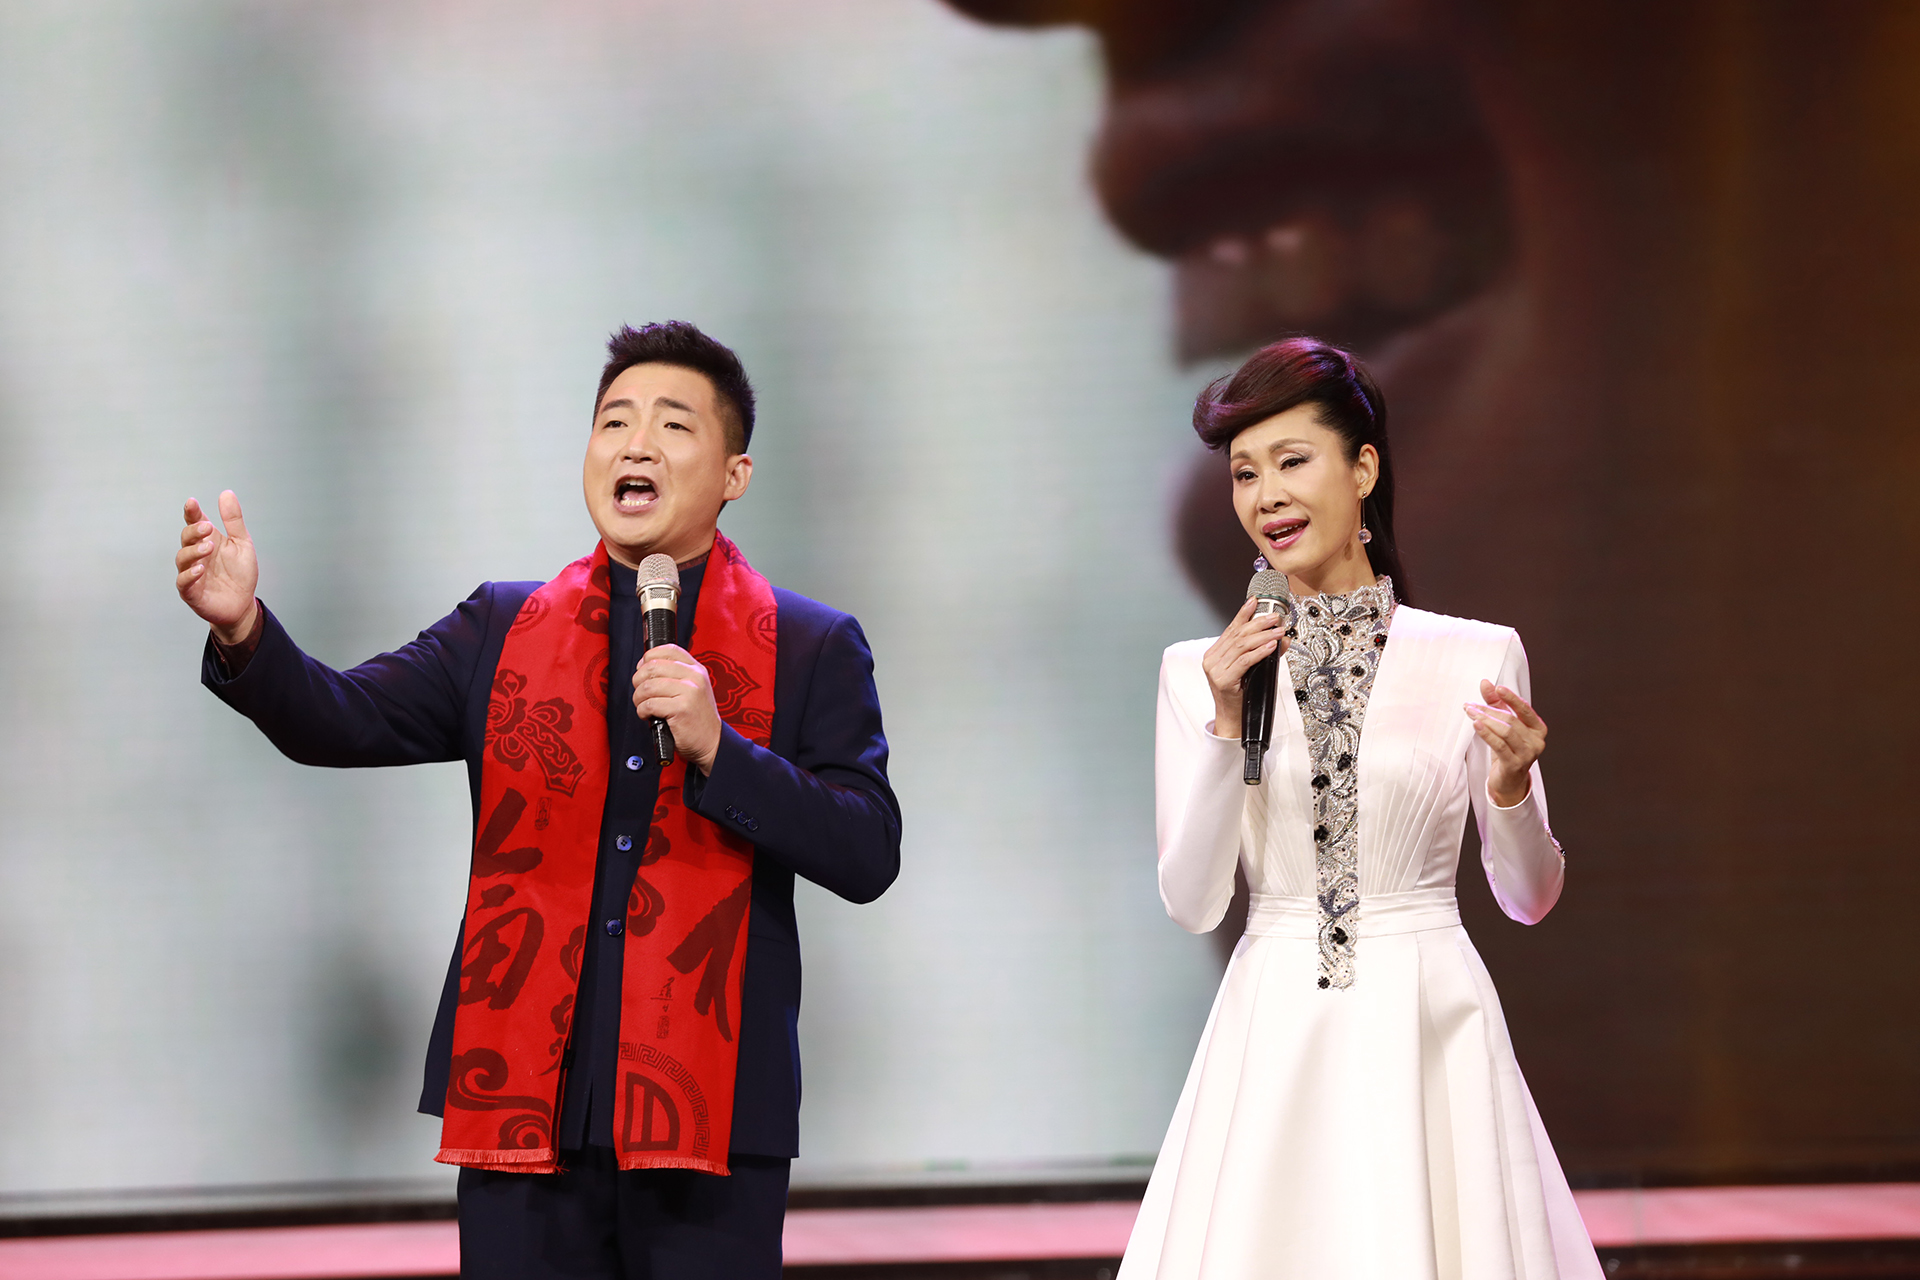 年纪最小的青年歌唱家张嘉玲在华夏之星春晚崭露头角备受关注